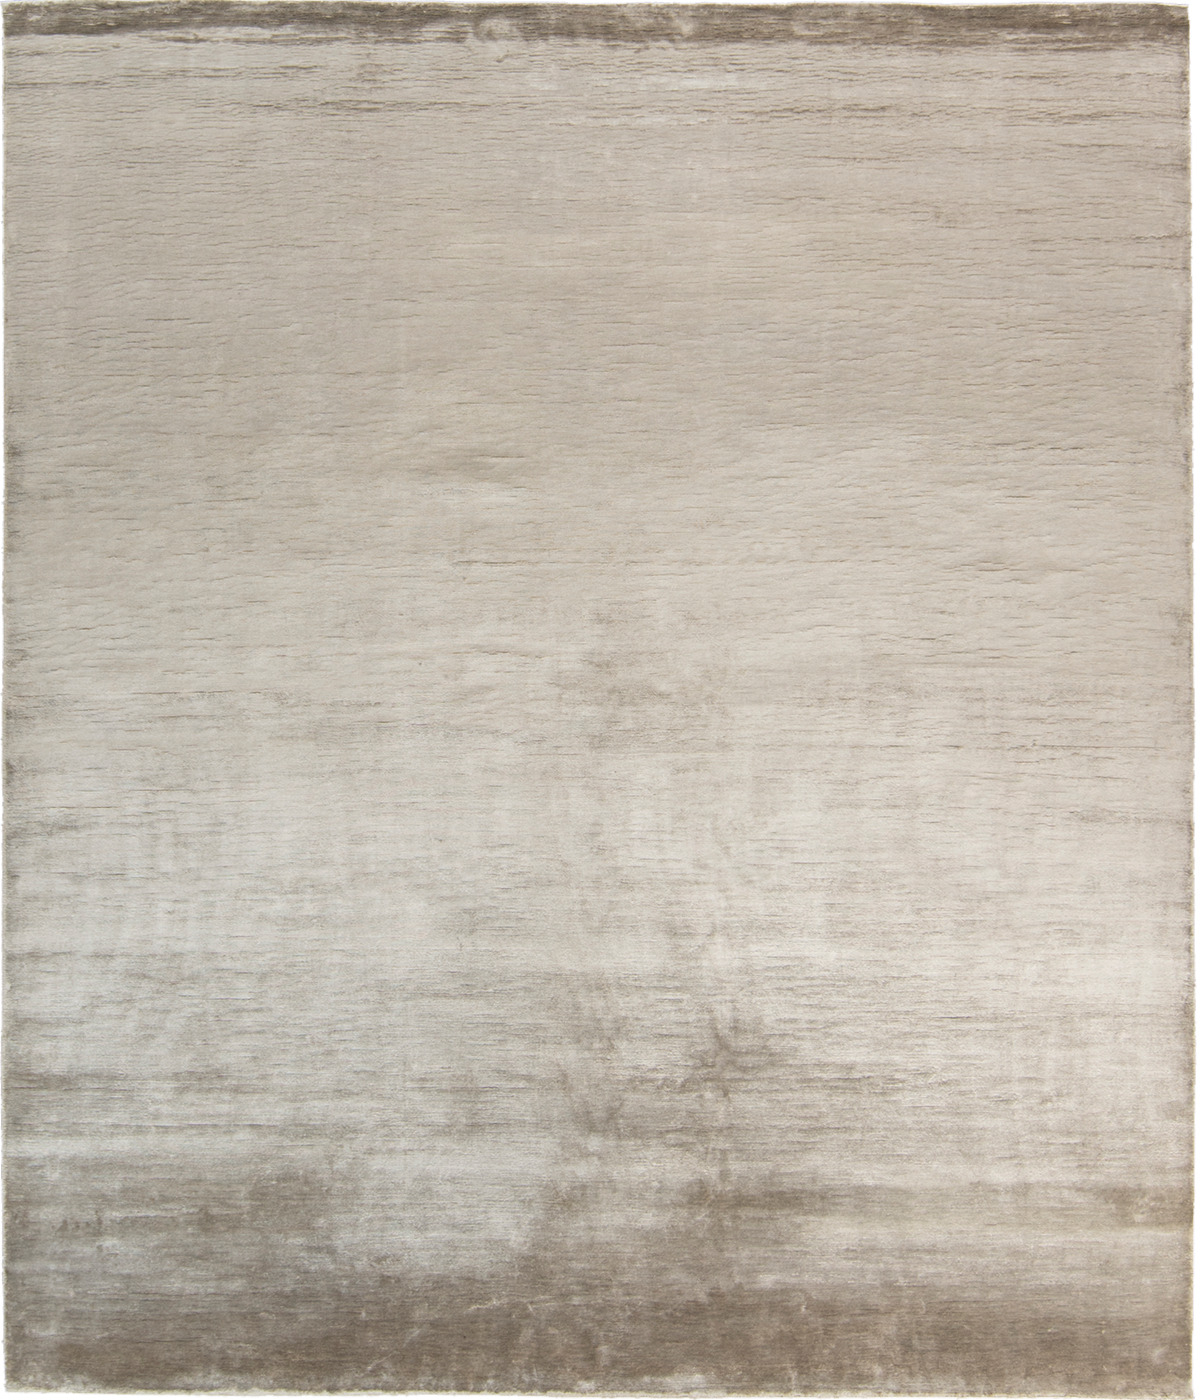 Plain Beige Rug ☞ Size: 250 x 300 cm